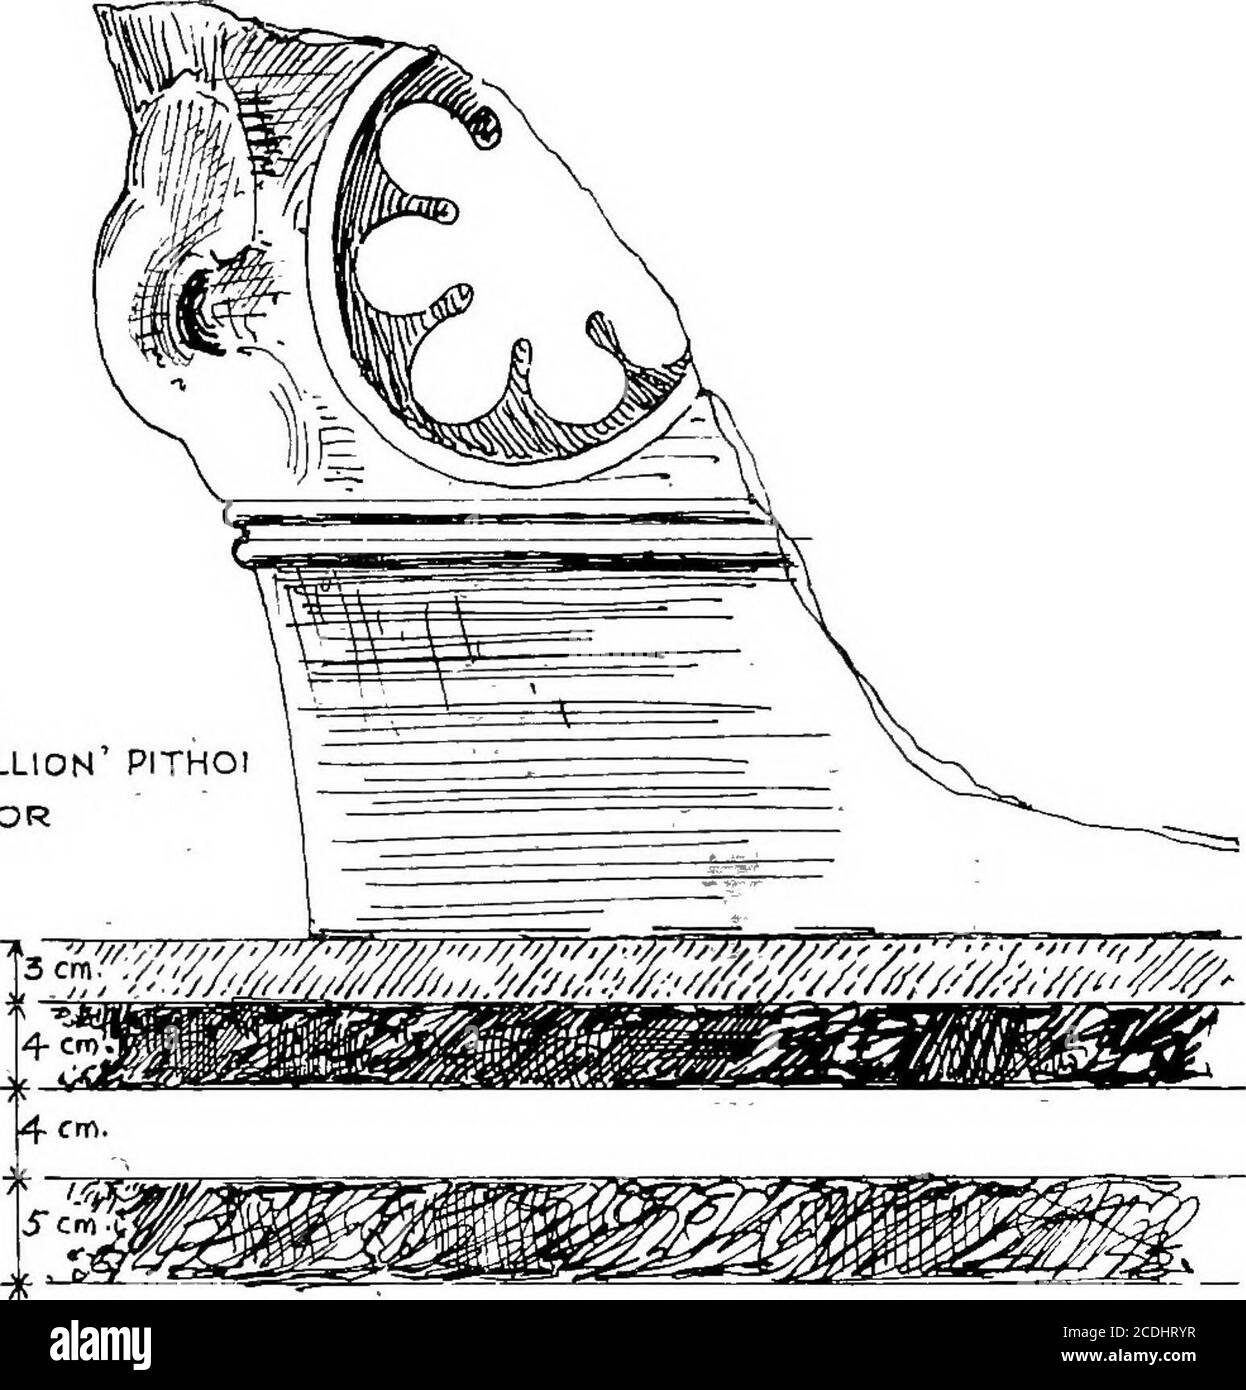 . Der Palast von Minos: Ein vergleichender Bericht der aufeinanderfolgenden Stadien der frühen kretischen Zivilisation, wie illustriert durch die Entdeckungen bei Knossos. Hat es gibt, wie unten gezeigt wird, Schlüssige Gründe für die M. ill-Schicht, in der der Alabastron-Deckel mit Stratum. Con- der Name des Hyksos Pharao Khyan auf ein Datum anterior zu diesem Re- tainingpräsentiert durch die neuesten Boden-Ablagerungen dieser Zeit. Es wird sich zeigen, dass ^^l^^dieses wichtige Relikt hier nicht als Hinweis auf eine phantasievolle Hyksos-Eroberung Kretas, sondern als Zeichen der Restaurierung betrachtet wird Stockfoto